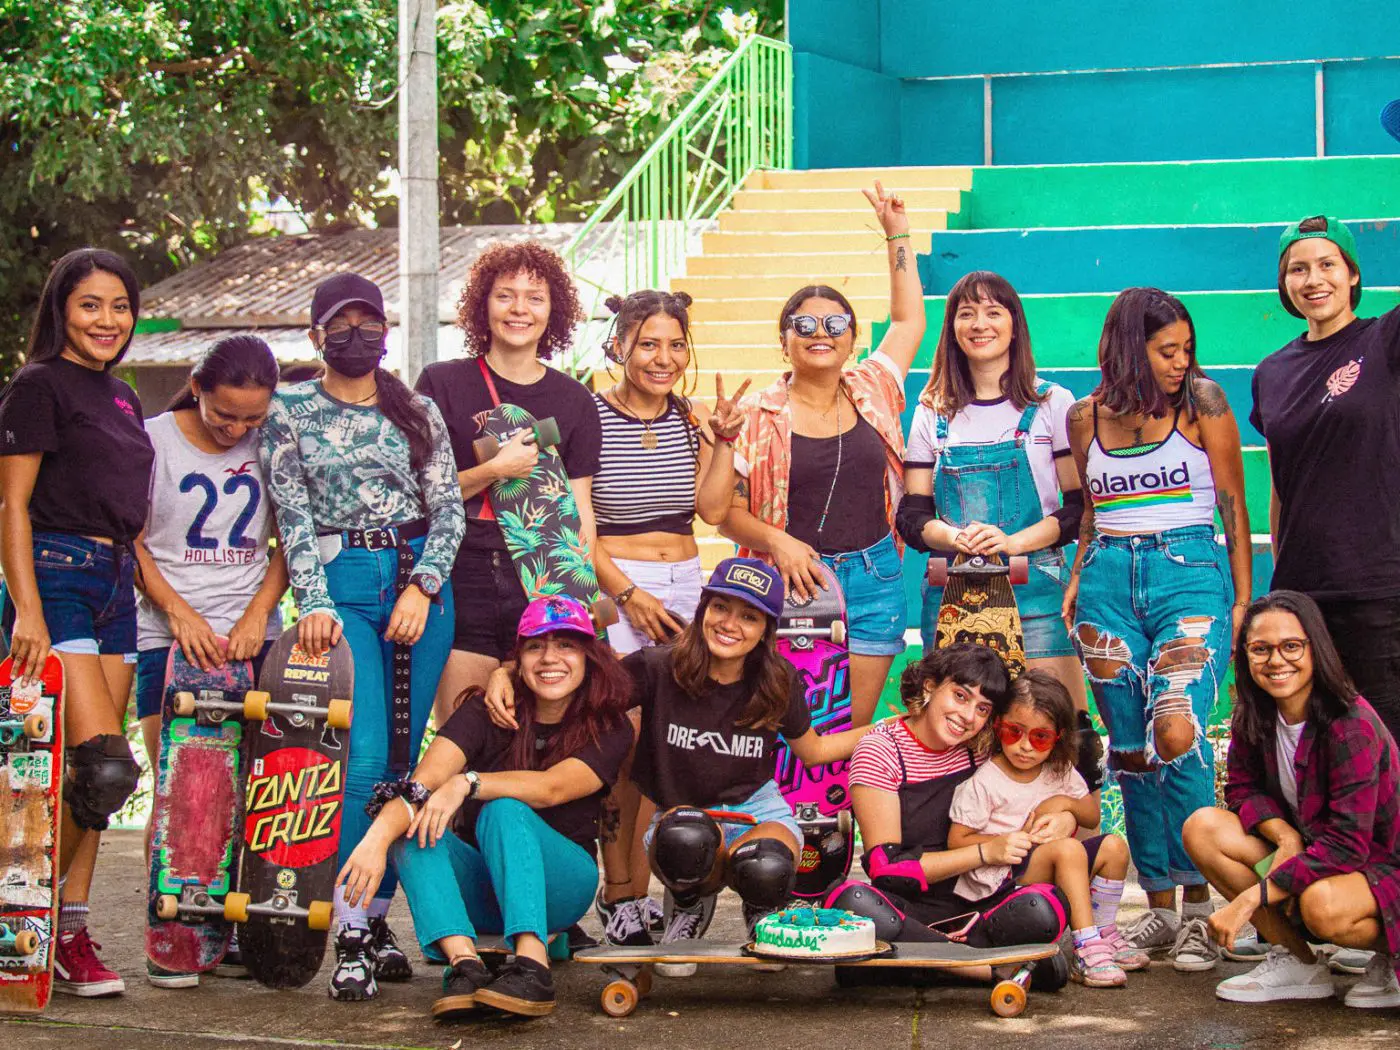 Skater Femenina contra el sexismo, empodera a las mujeres a través de la comunidad